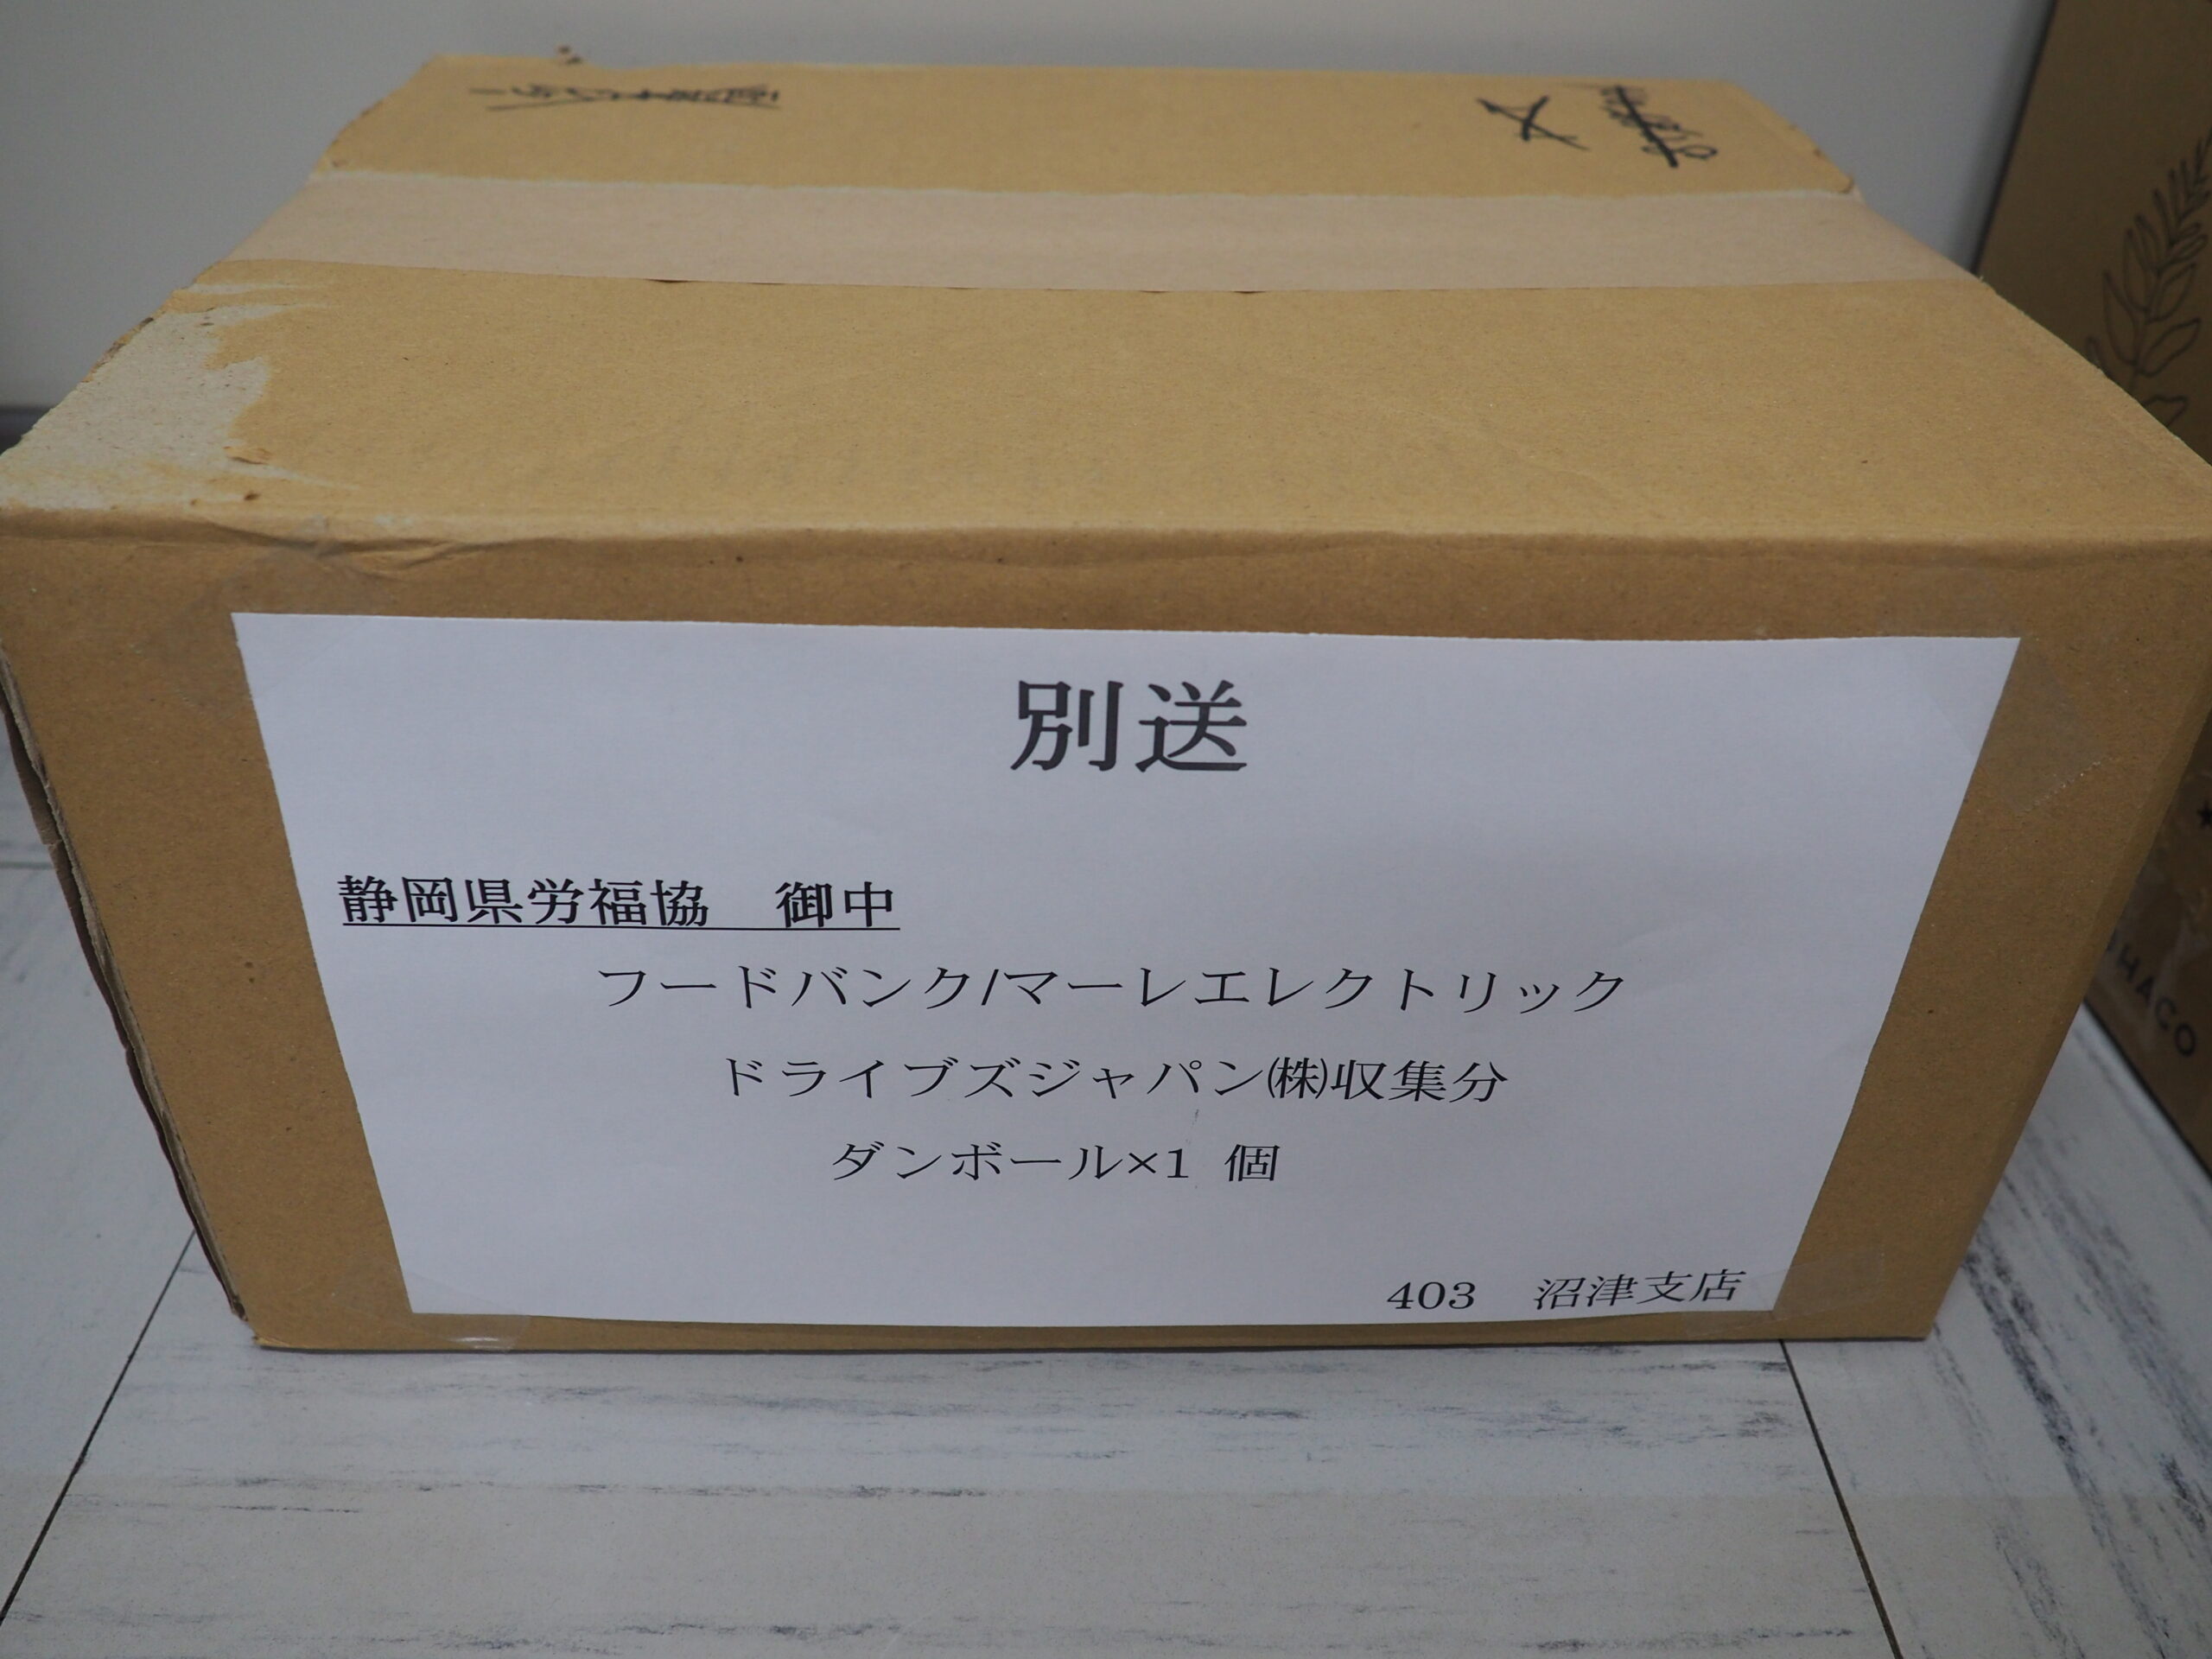 マーレ―エレクトニックドライブズジャパン株式会社様・全矢崎労働組合大東支部様から食品を提供いただきました。